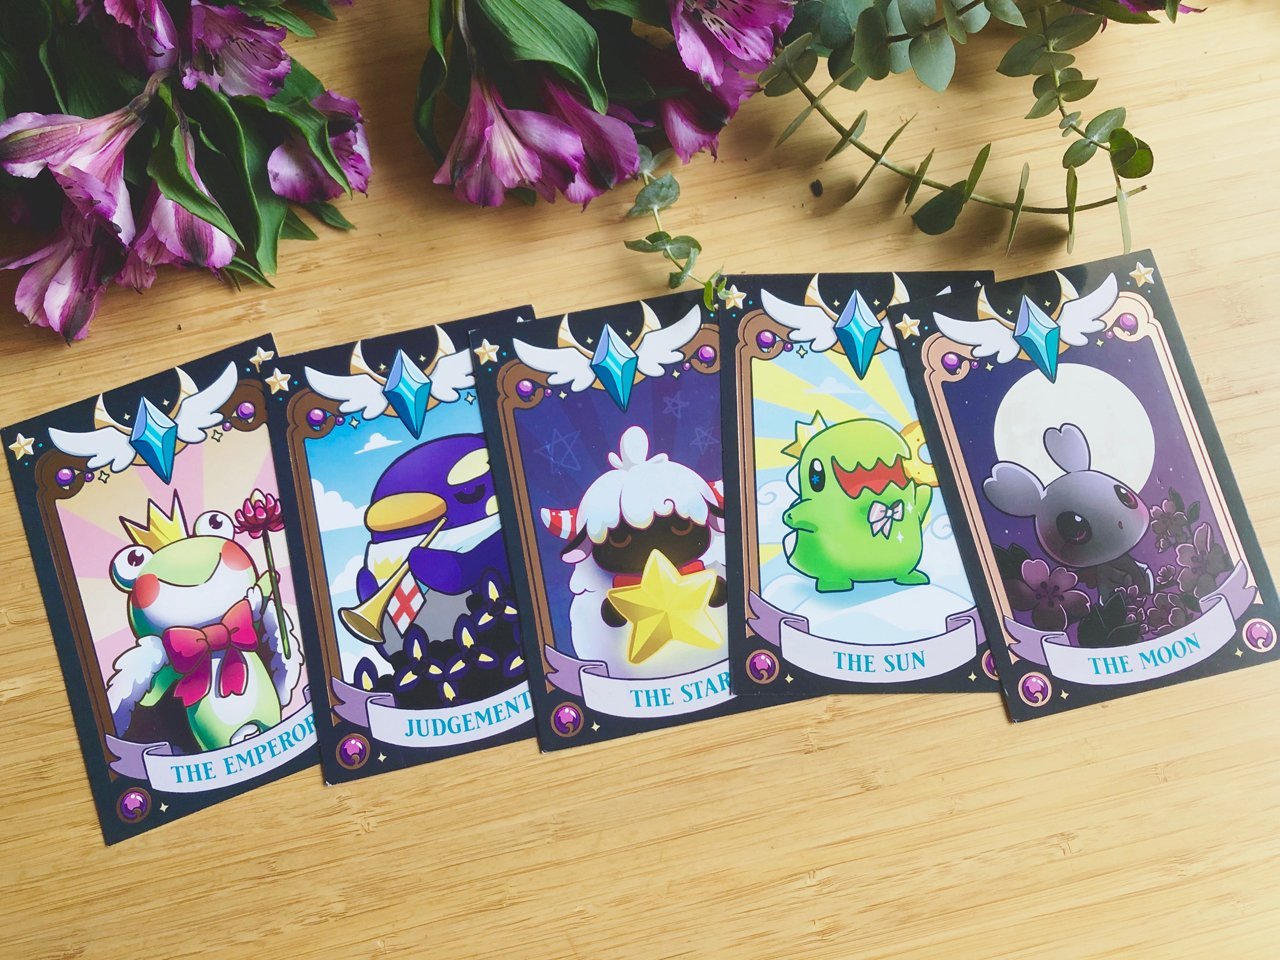 Tarot Cards Postcard Set - Sakuradragon